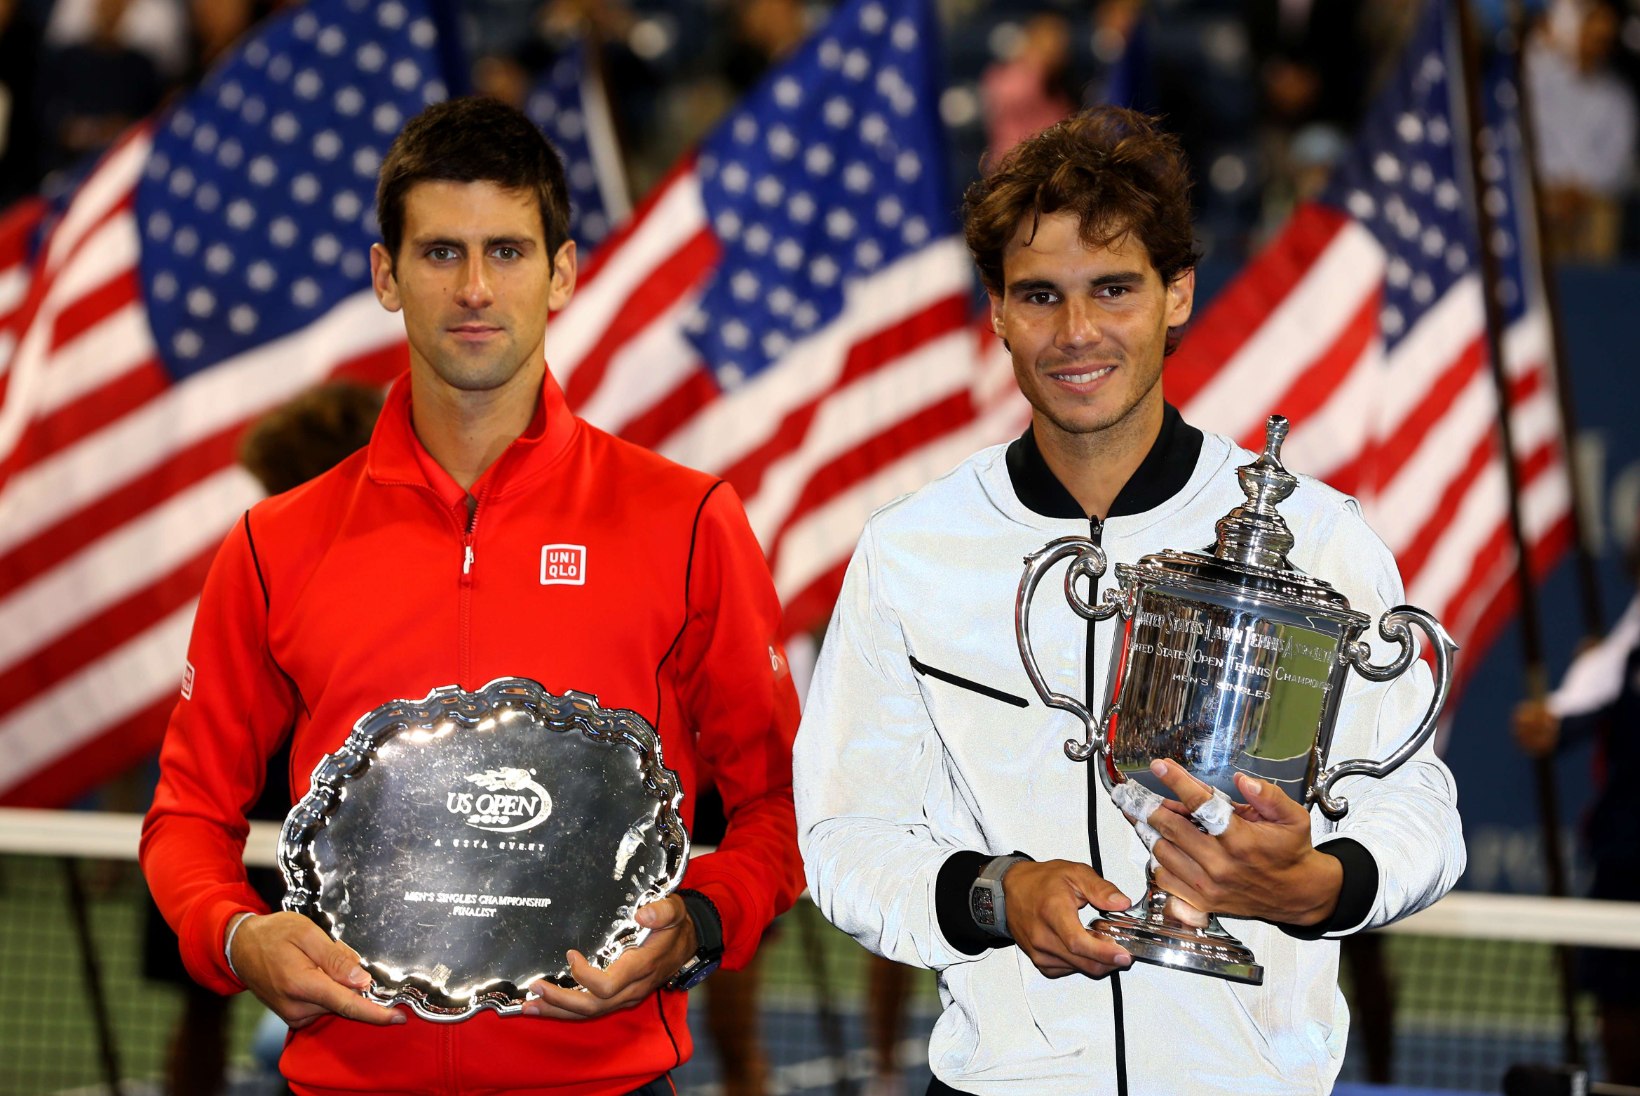 VIDEO: Sajandi pallivahetus Nadali ja Djokovici esituses